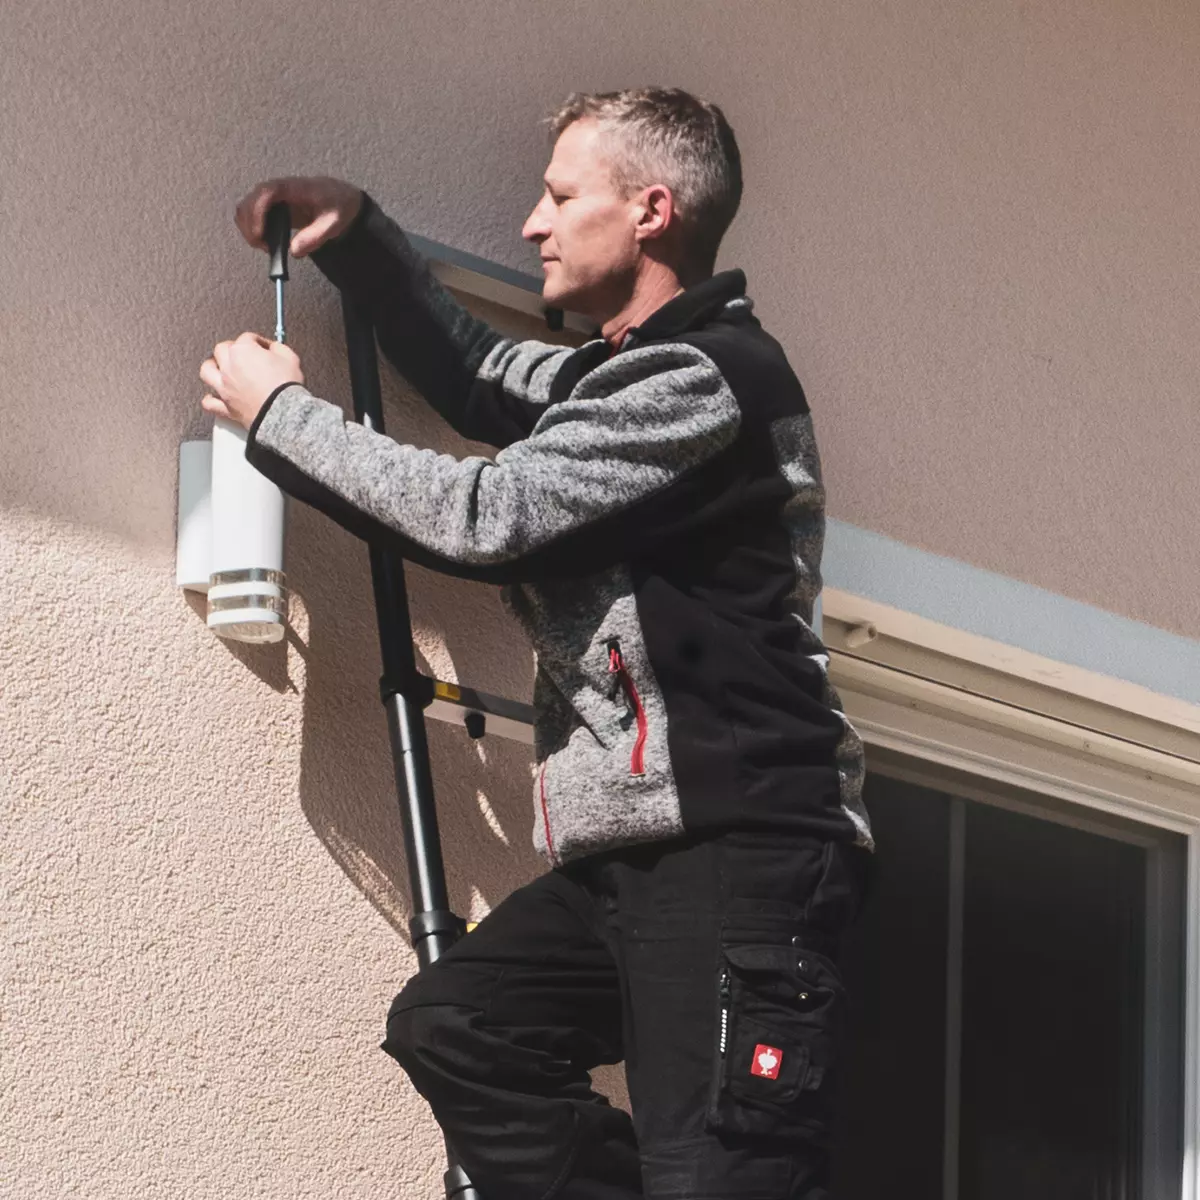 Mann repariert stehend auf der Aluminium-Leiter die Lampe an der Hauswand